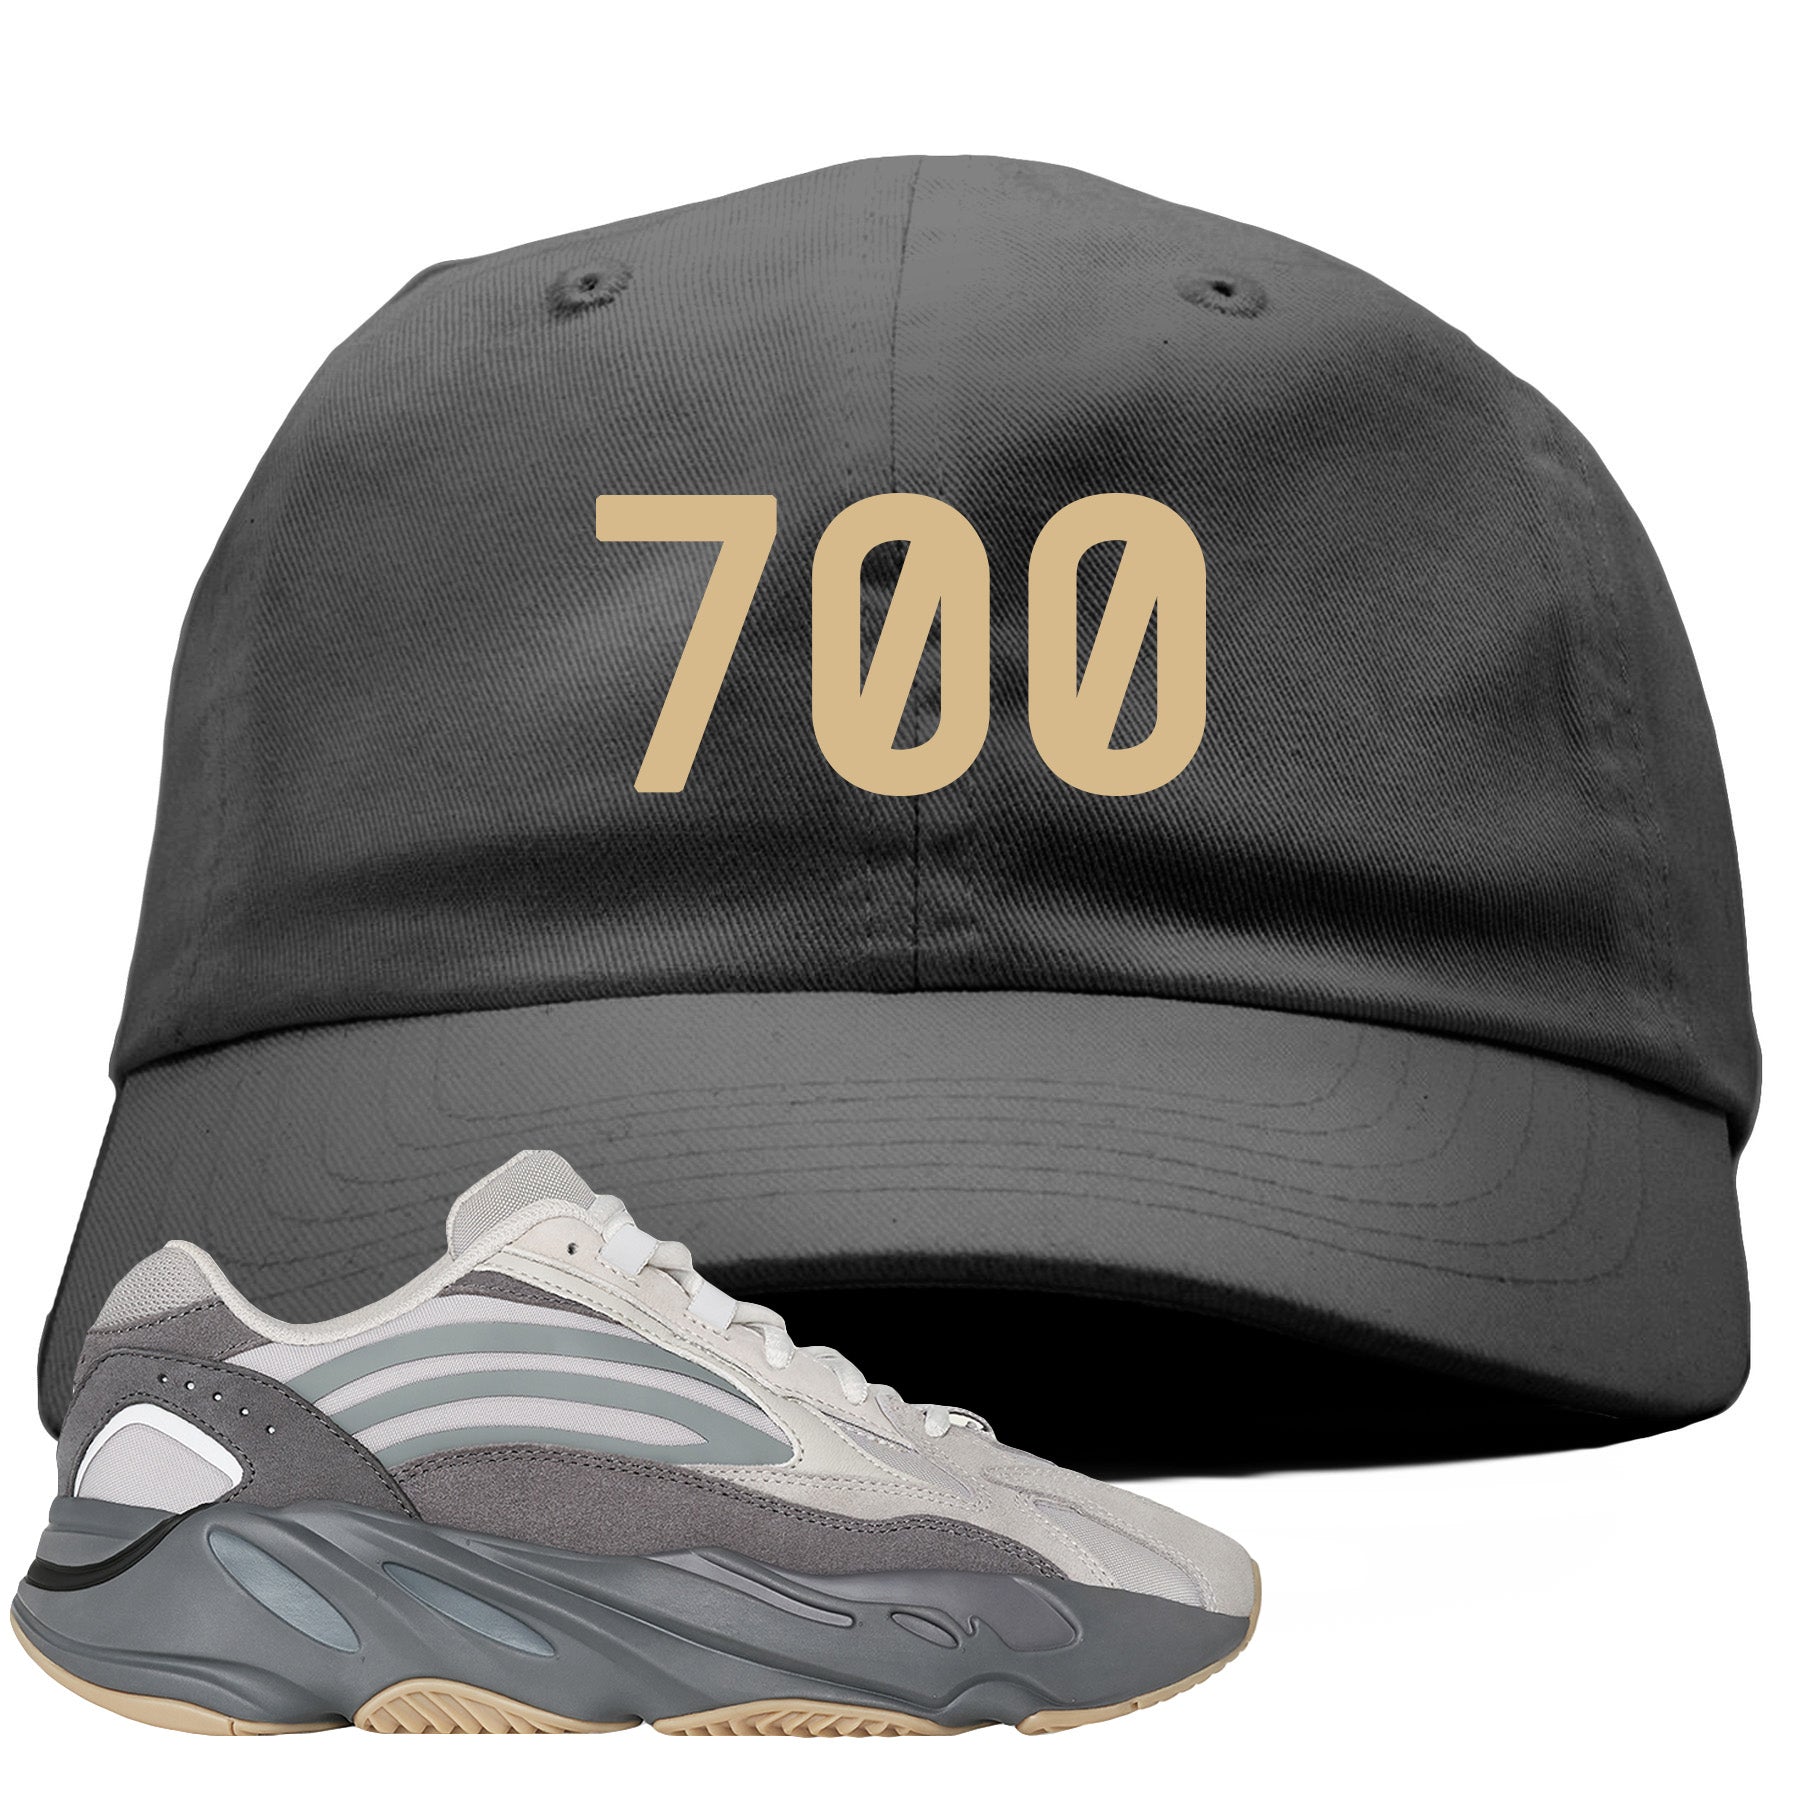 gray yeezy 700